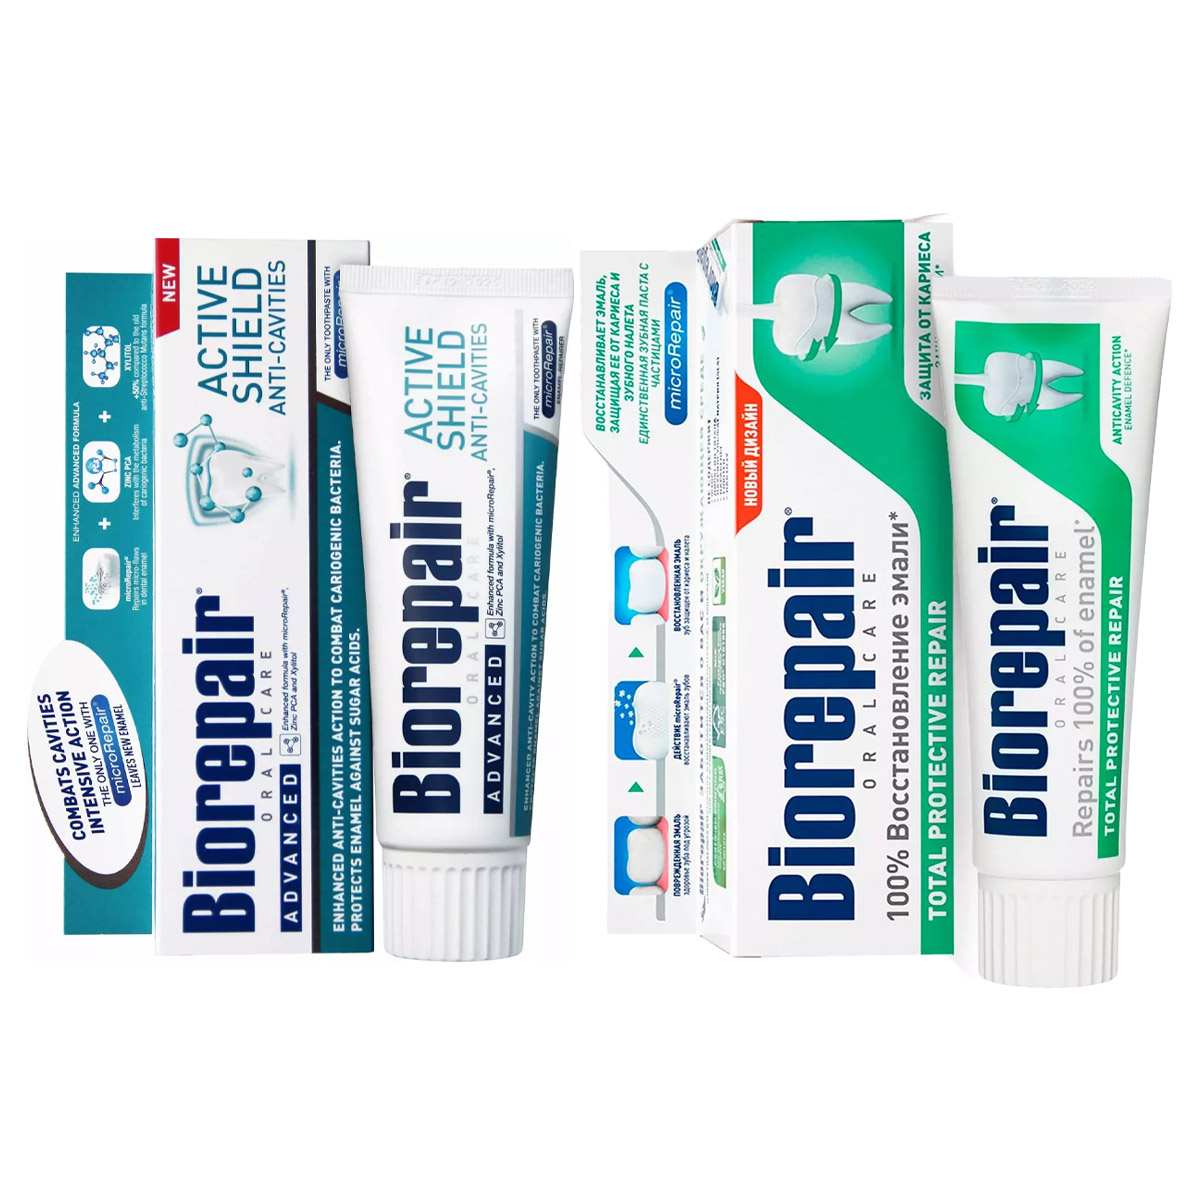 Biorepair Набор зубных паст для комплексной защиты зубов и эмали, 2х75 мл (Biorepair, Ежедневная забота) biorepair набор зубных паст для защиты эмали 2х75 мл biorepair отбеливание и лечение